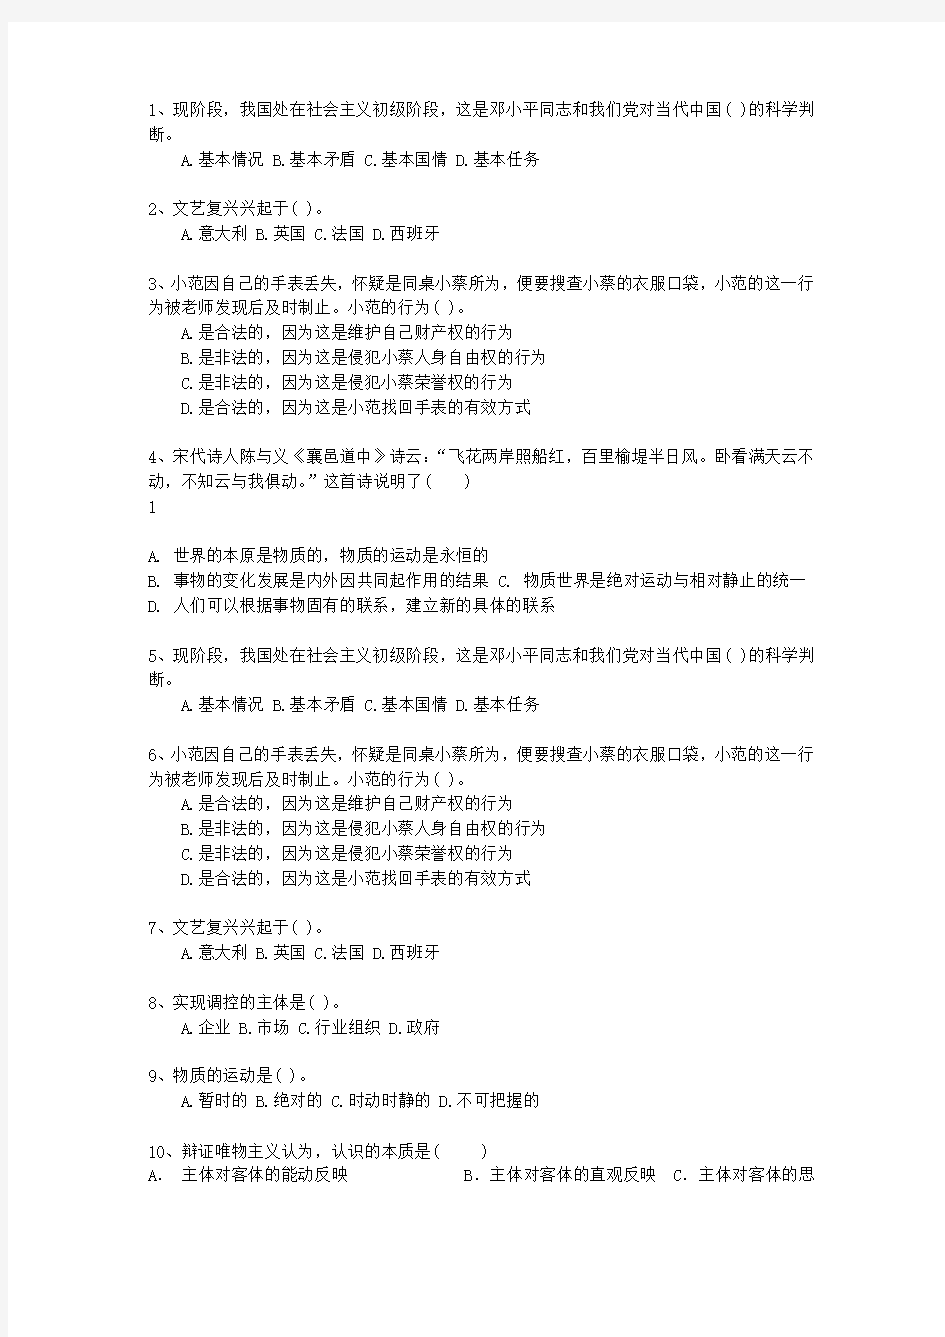 2014陕西省事业单位招聘考试公共基础知识考资料